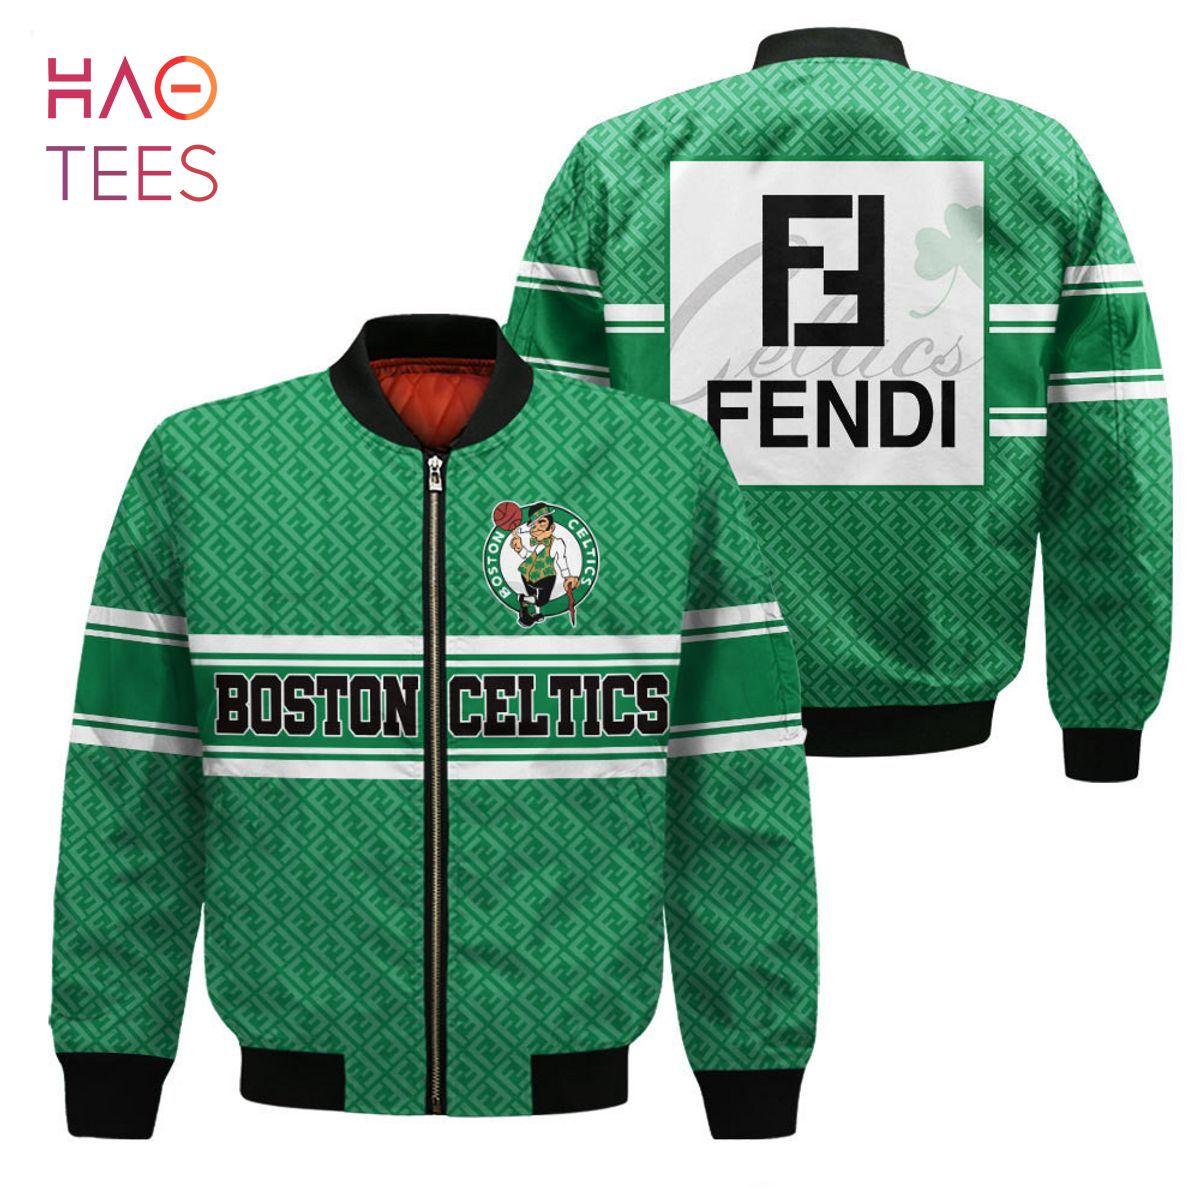 Fendi Boston Celtics Limited Edition Bomber Jacket